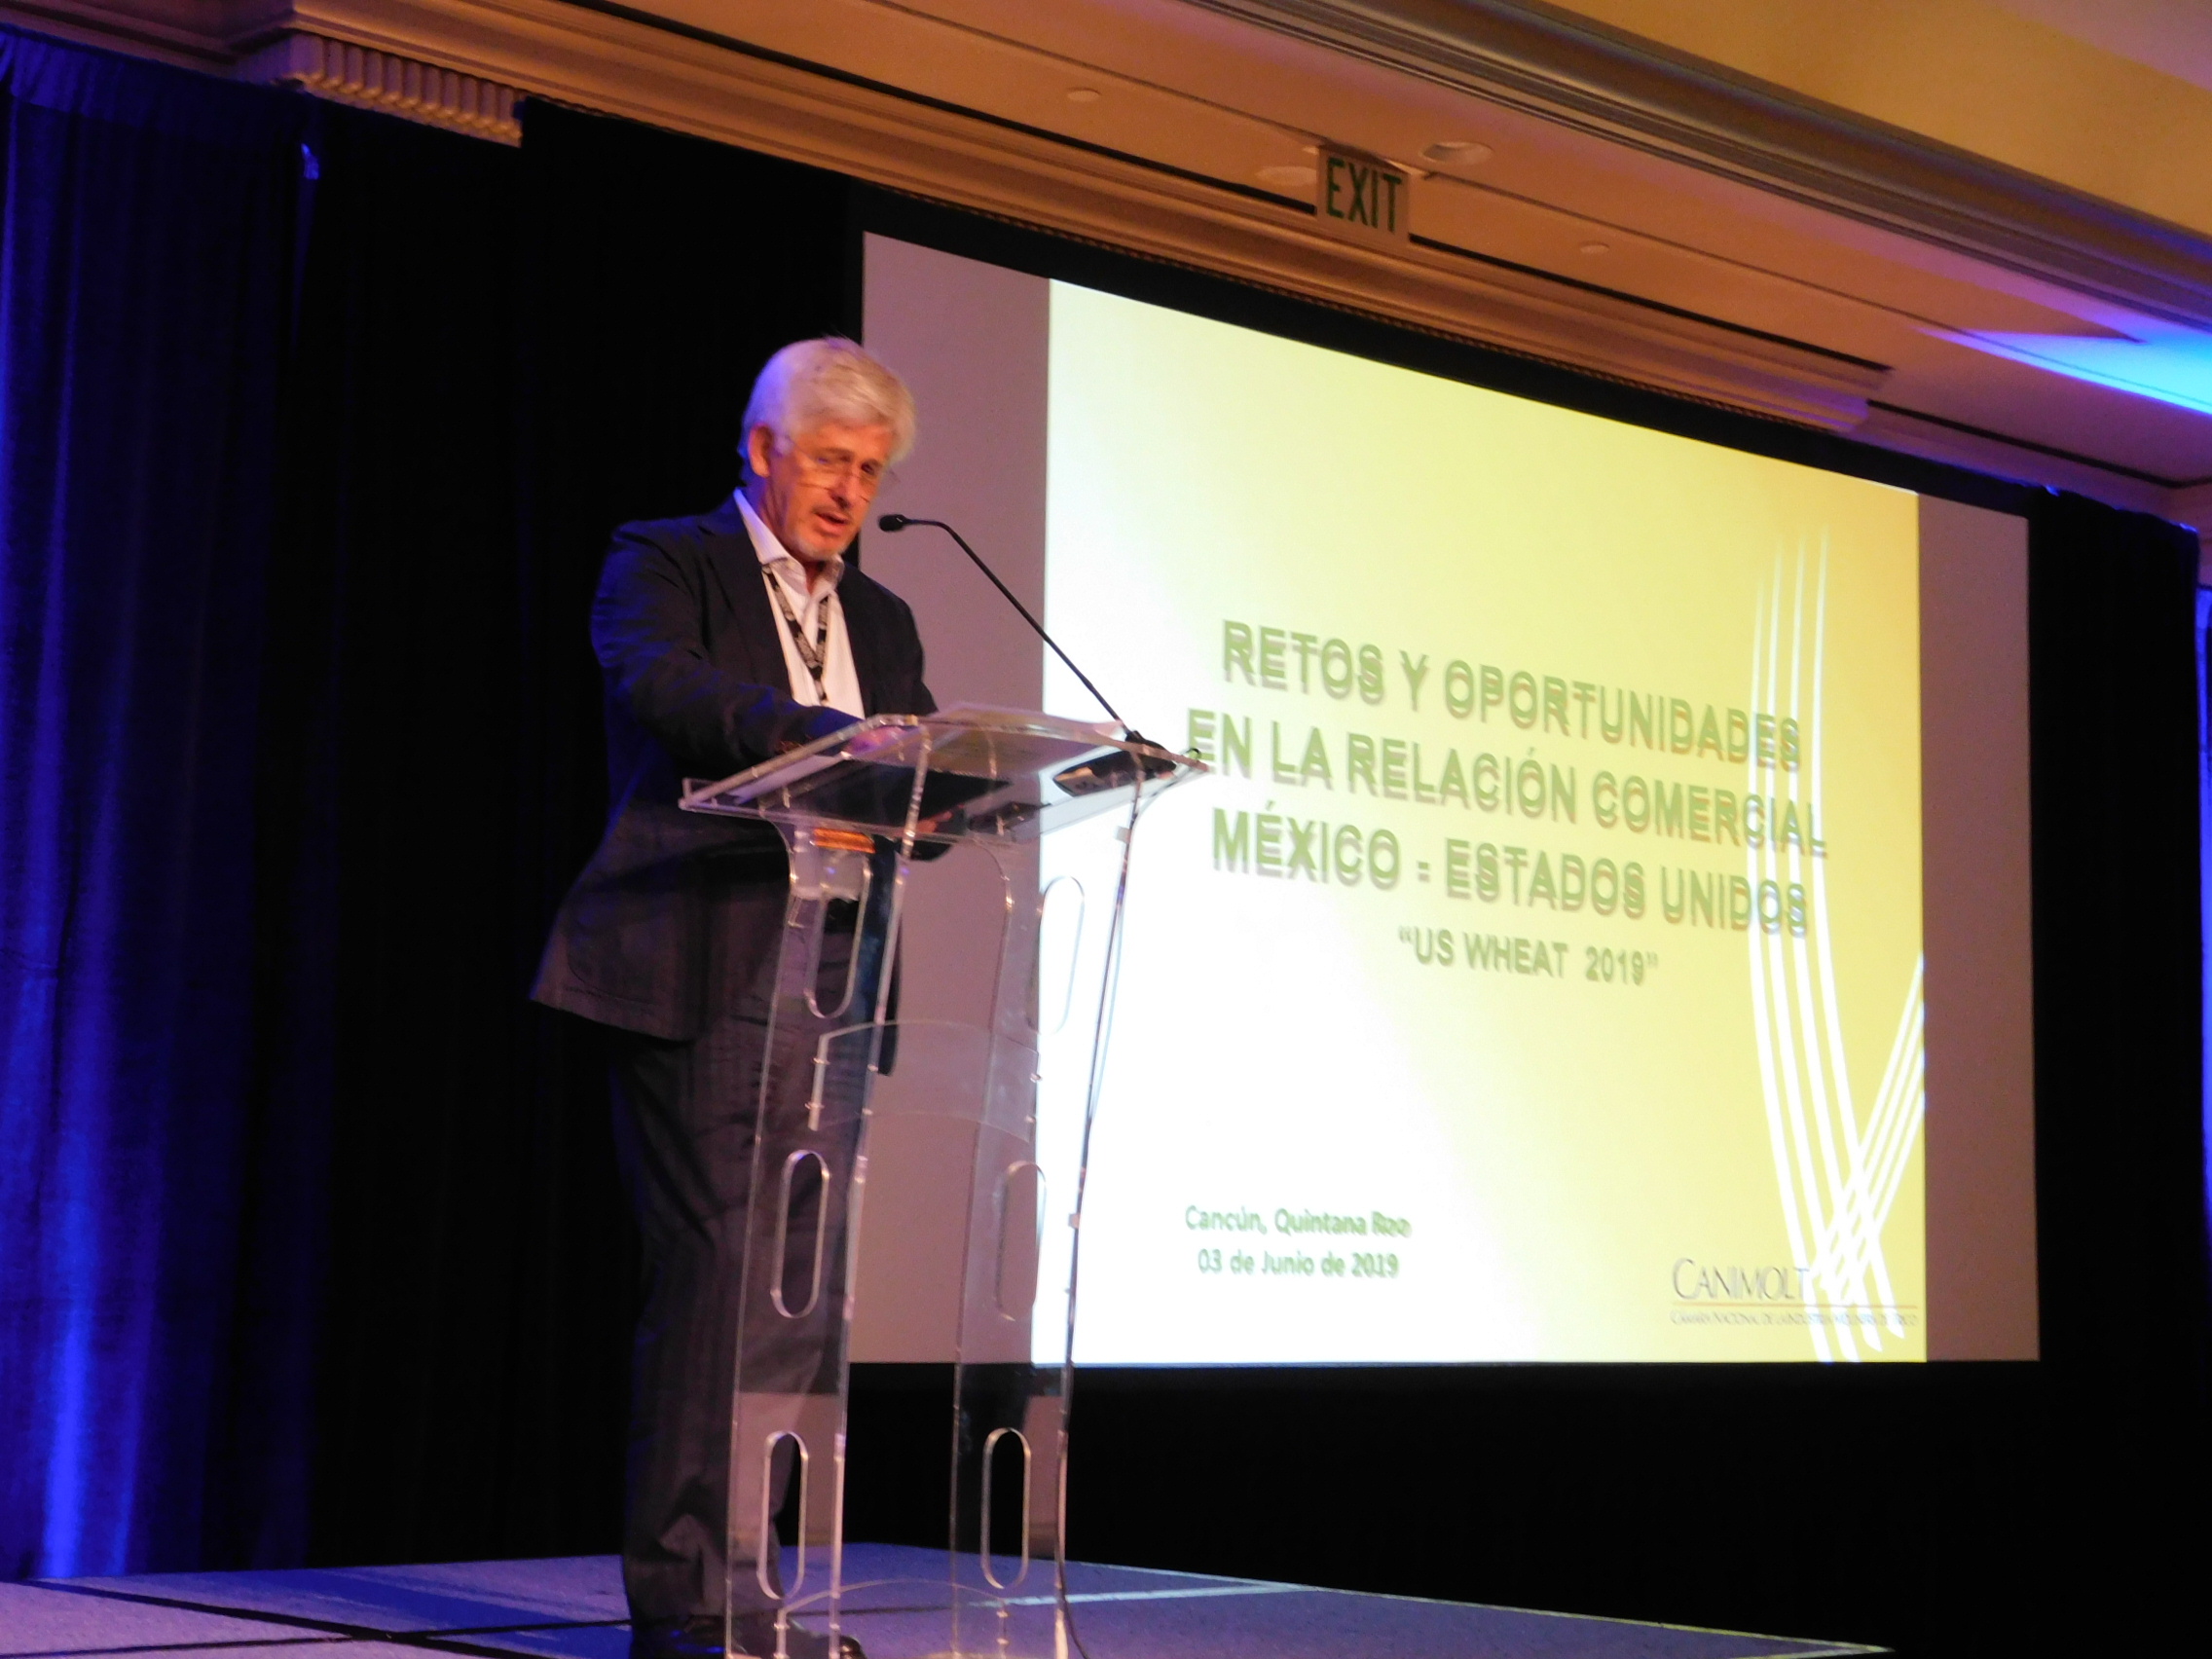 José Luis Fuente, President of Camara Nacional de LA Industria Molinera de Trigo (CANIMOLT)